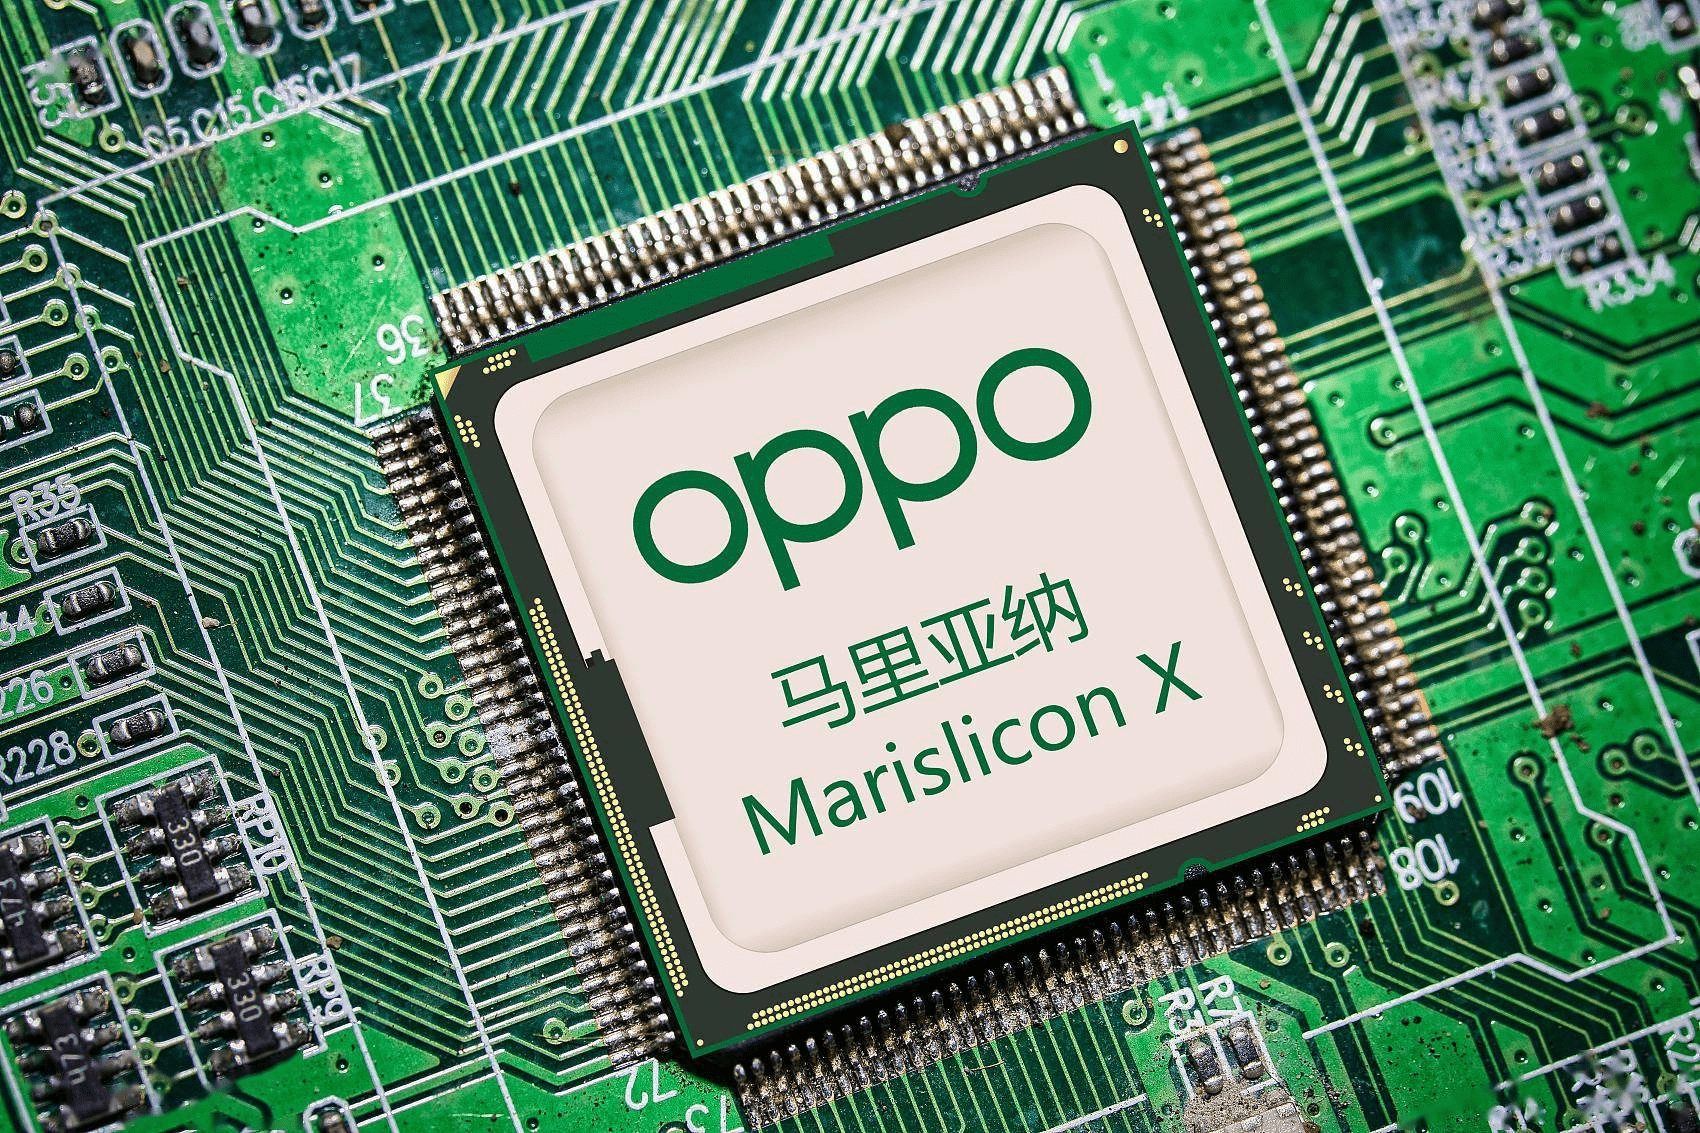 一旦该芯片的试量产成功,那么就证明oppo的芯片设计能力已经站在世界